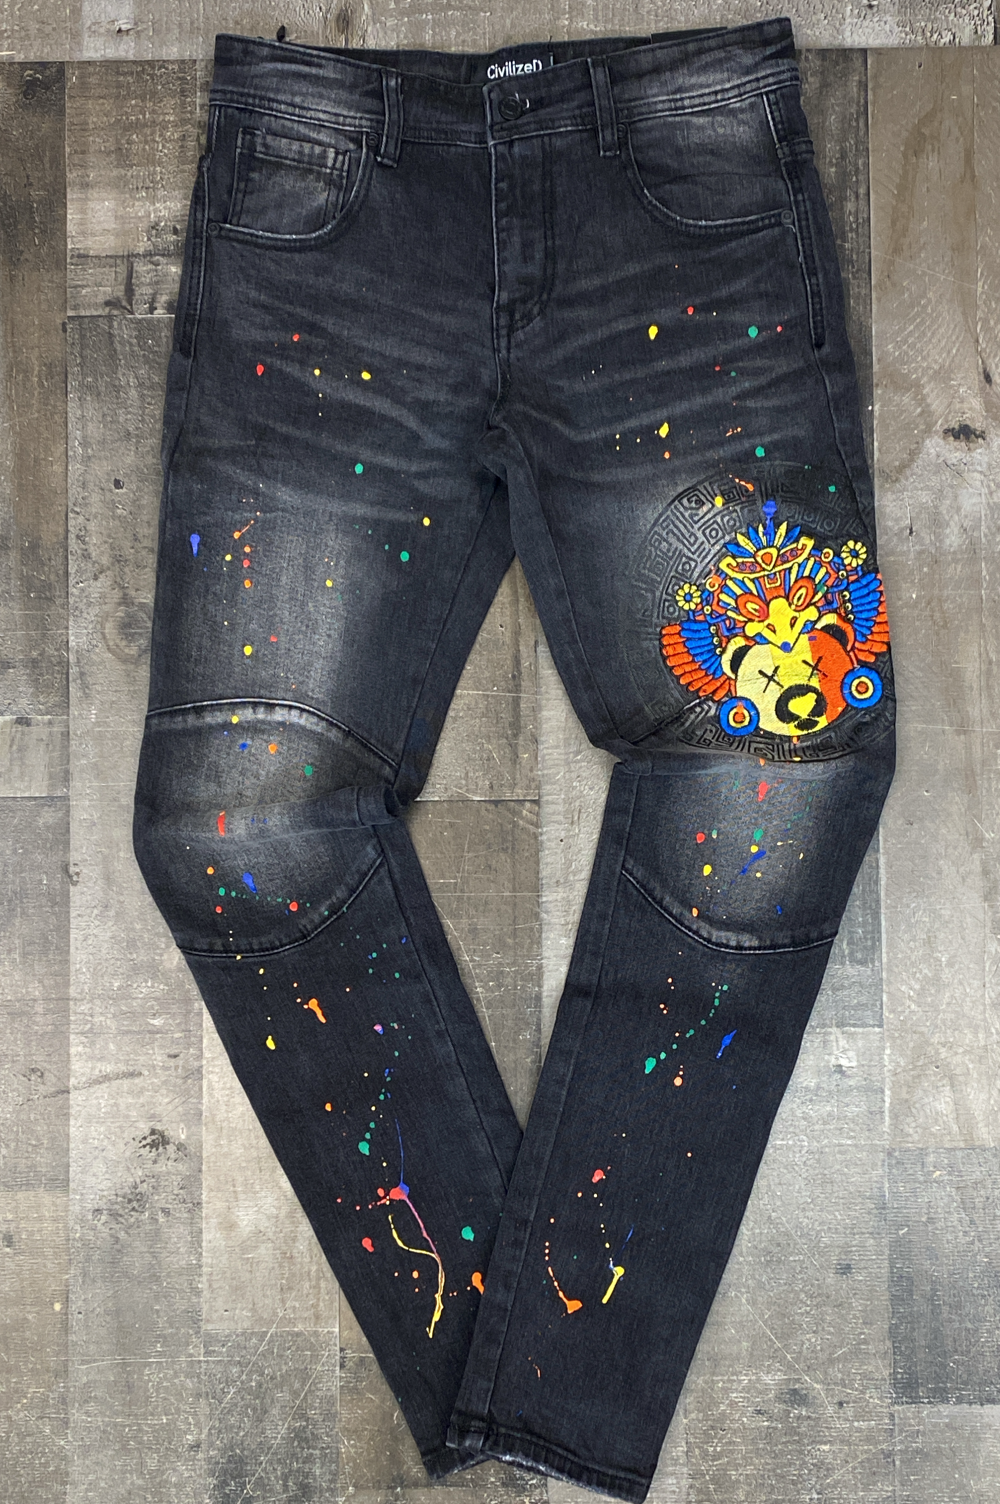 Civilized- splash bear denim jeans